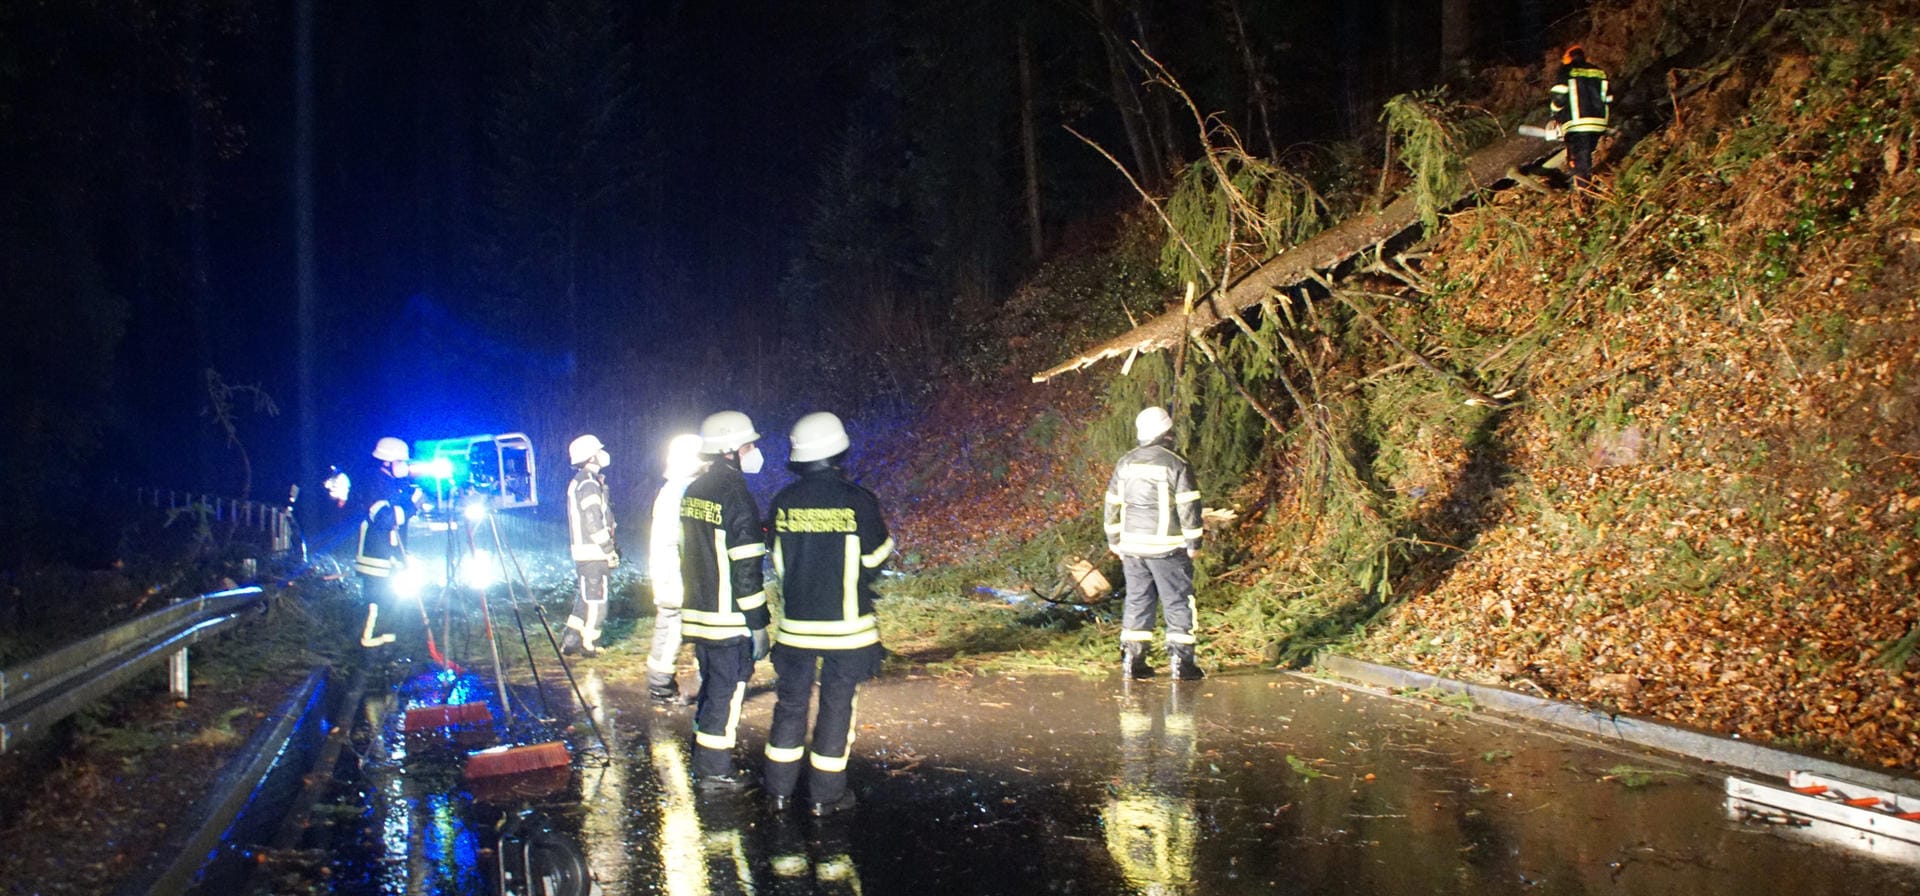 Baden-Württemberg, Birkenfeld: Die Feuerwehr beseitigt einen umgefallenen Baum, der beim Sturm auf eine Straße gestürzt ist.